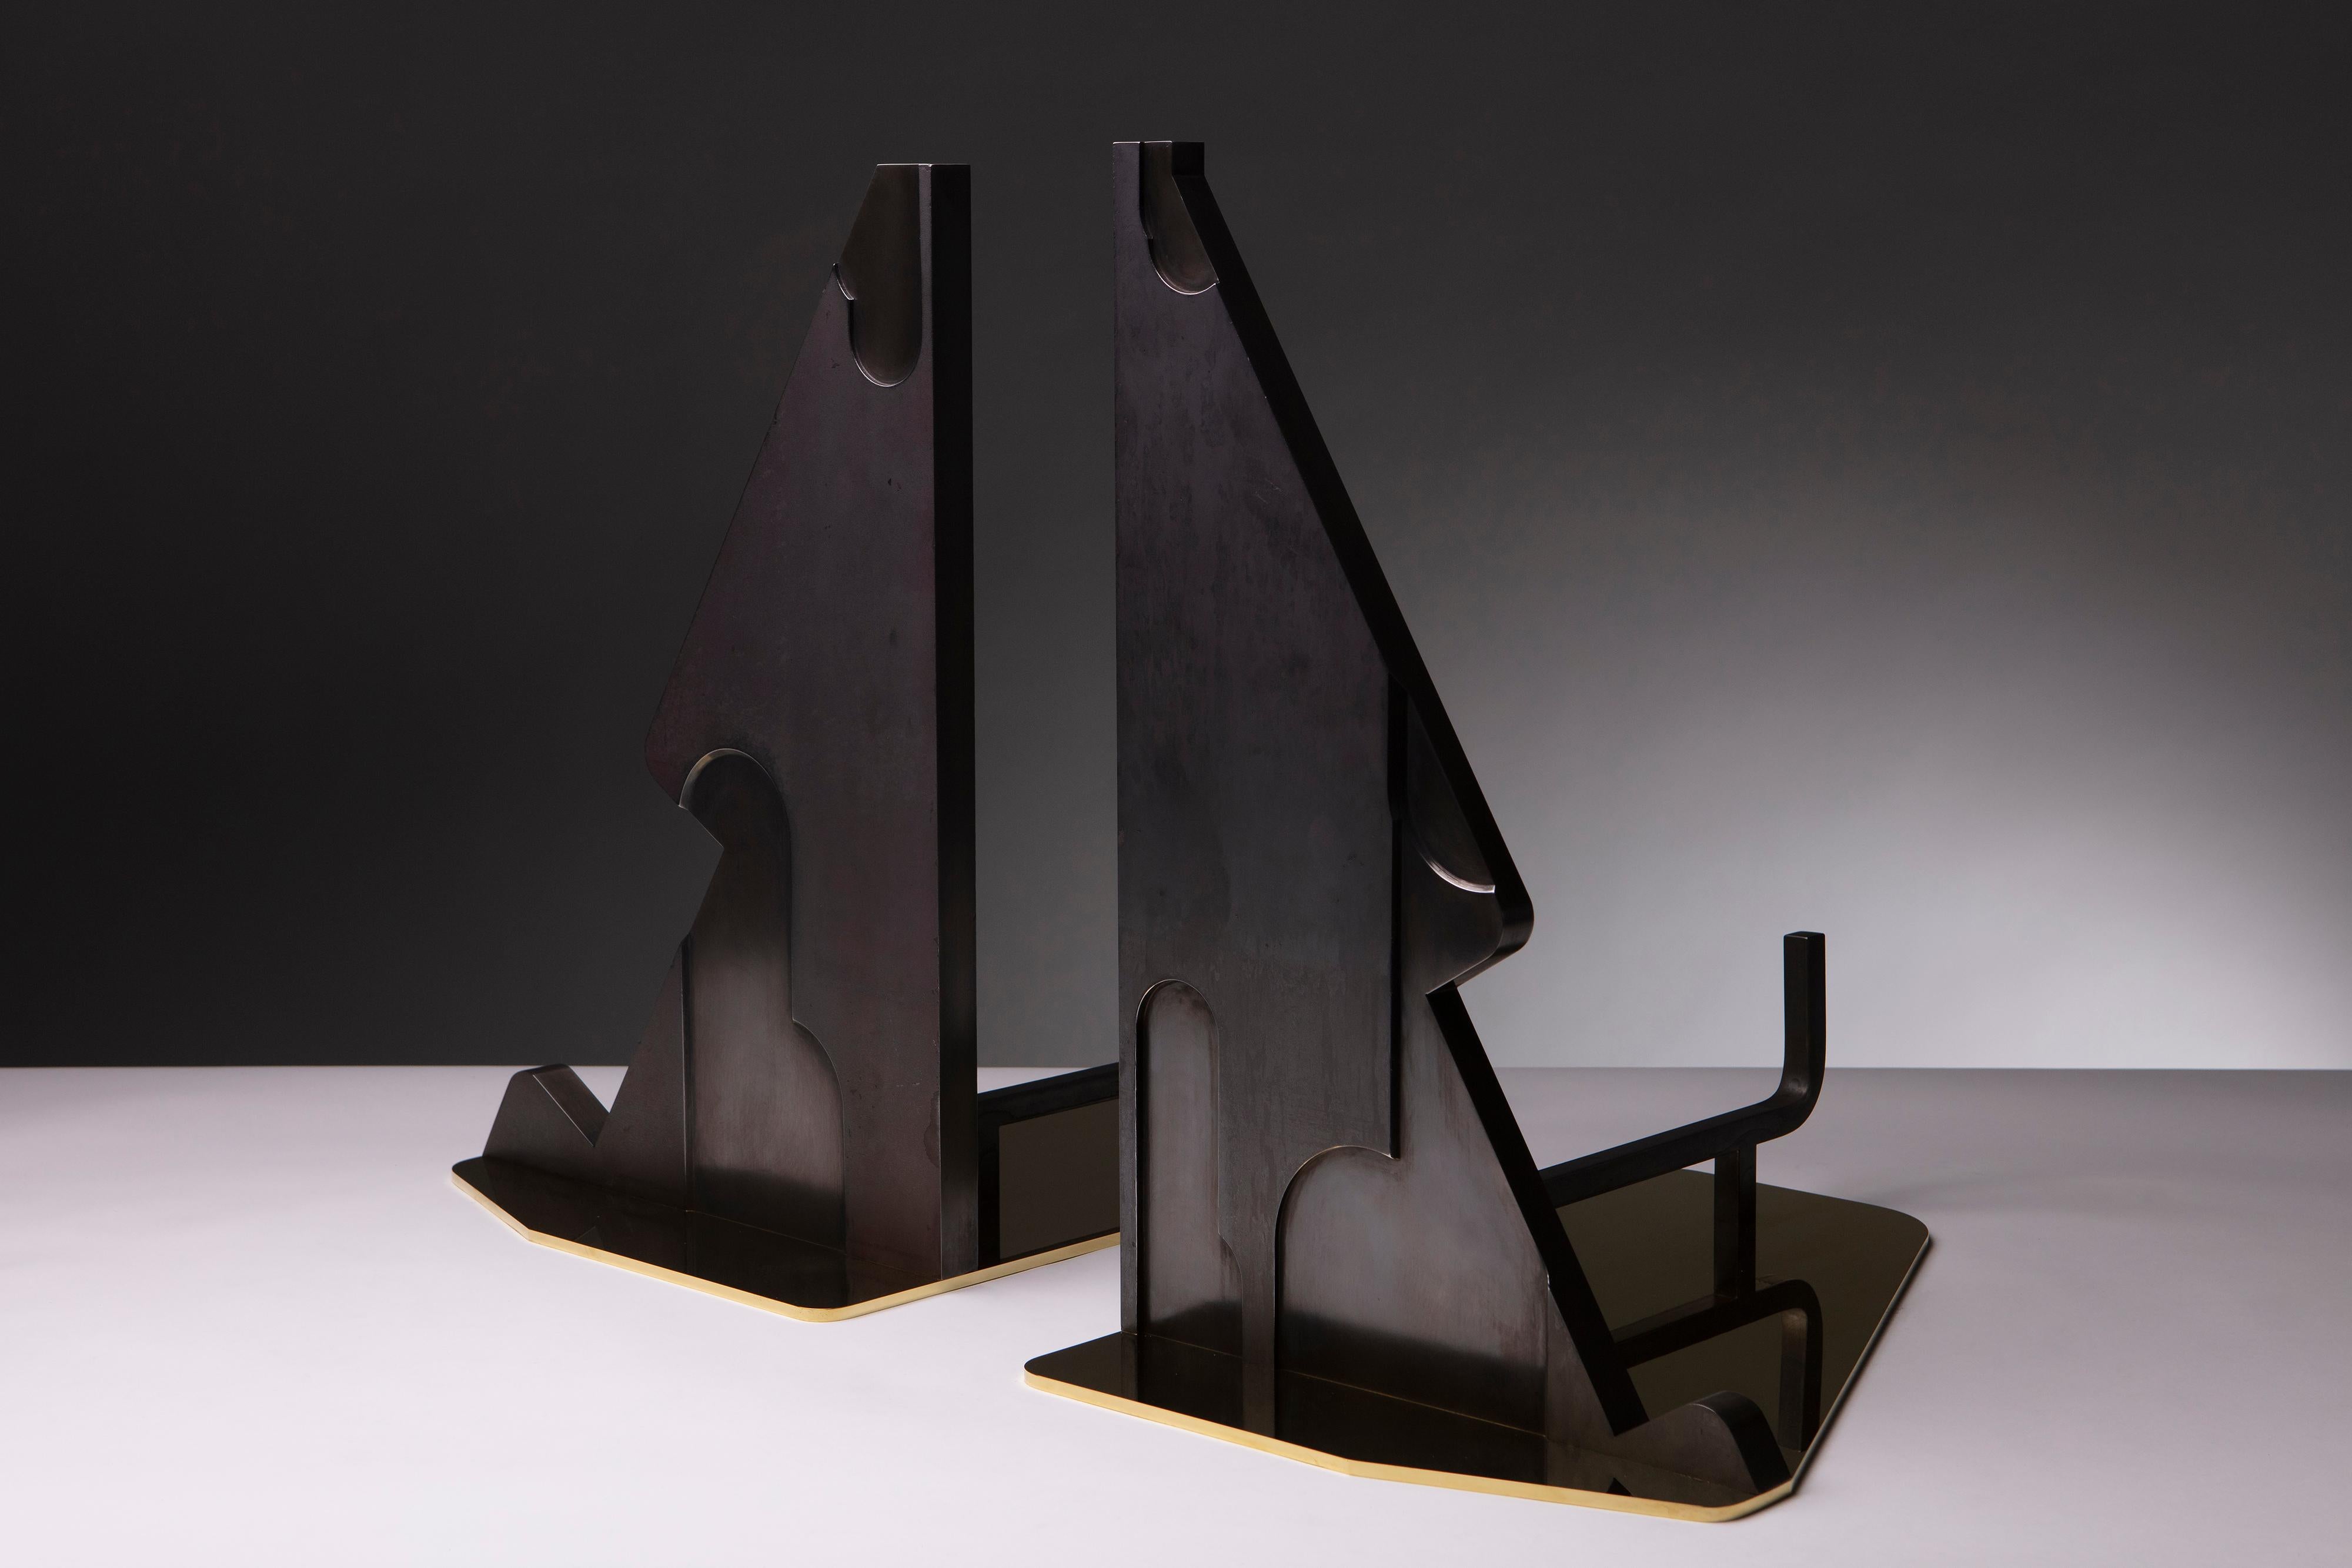 Ein einzigartiges Paar zeitgenössischer polierter Messing- und Stahl-Eisen von Erik Johnson von APD. Dieses atemberaubende Set setzt ein kühnes Statement in einem modernen Zuhause.

1 von 1 

APD Position 00037

Ein Echtheitszertifikat liegt dem Set